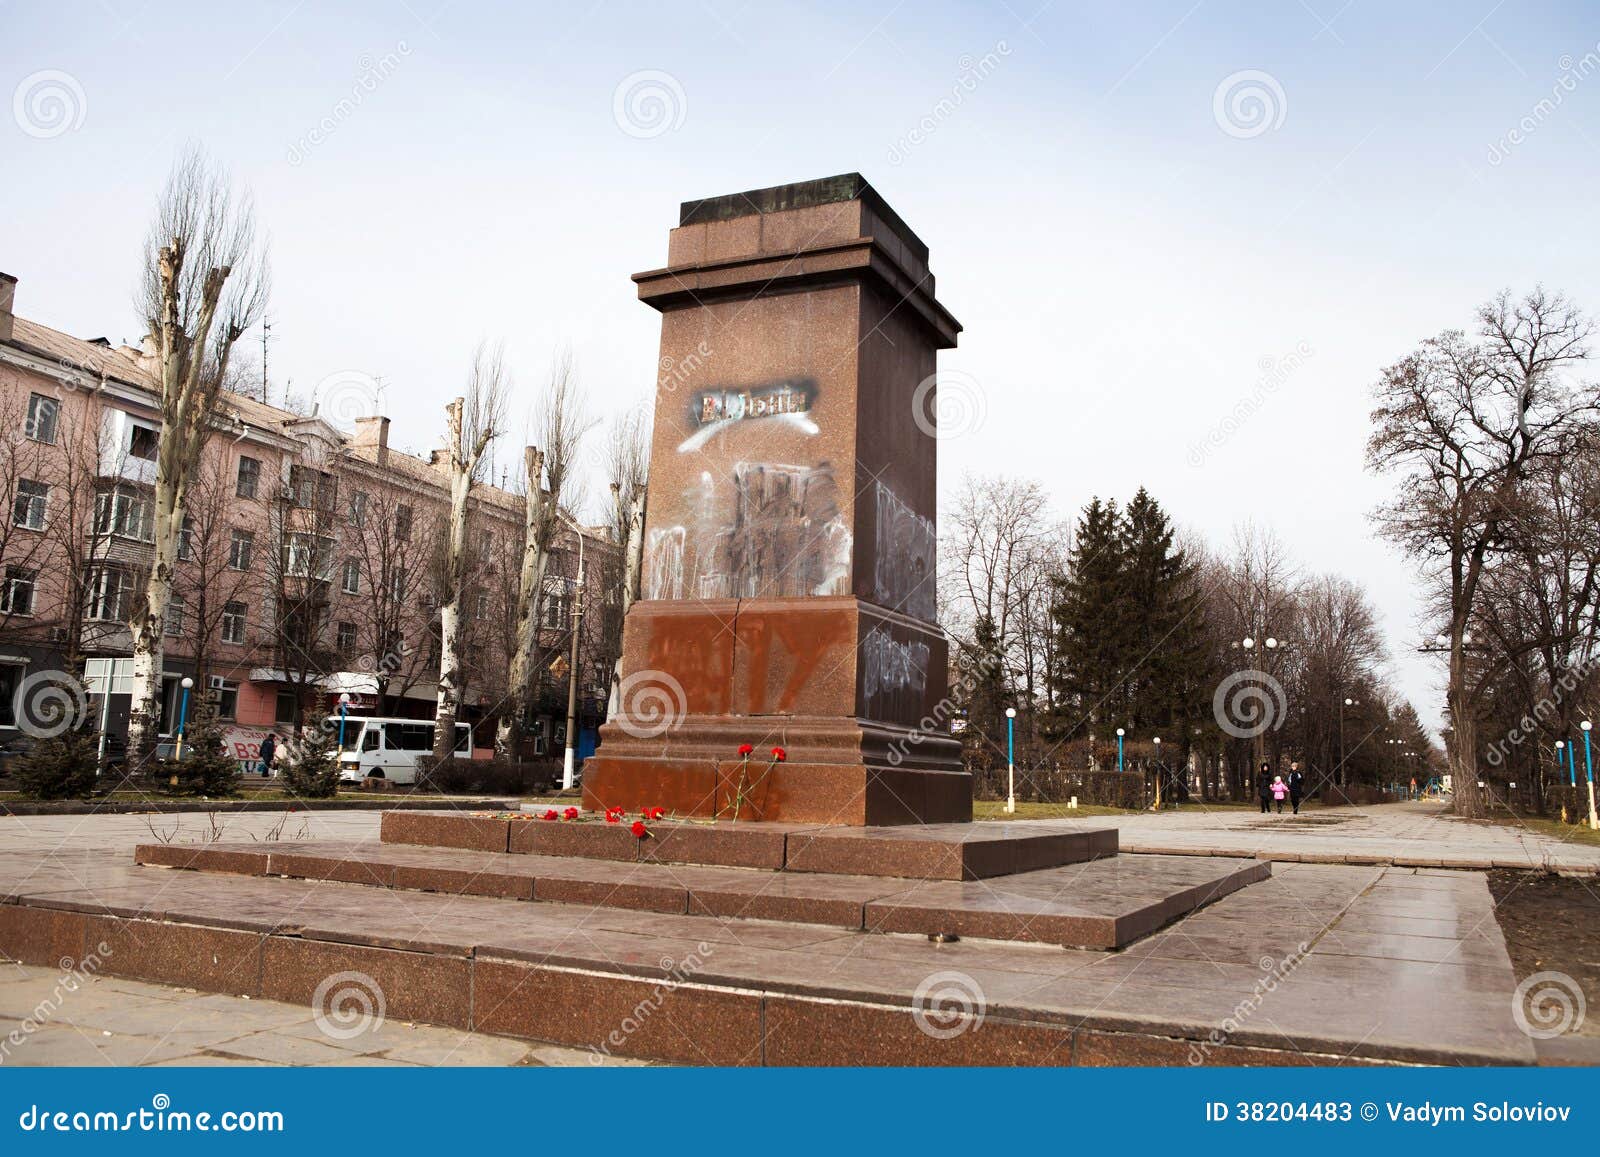 DNIPRODZERZHYNSK, UCRAINA 23 FEBBRAIO 2014: Destr dei dimostratori. DNIPRODZERZHYNSK, UCRAINA 23 FEBBRAIO 2014: I dimostratori hanno distrutto il monumento di Vladimir Lenin nel centro di Dniprodzerzhynsk durante la rivoluzione ucraina febbraio 23,2014 in DNIPRODZERZHYNSK, UCRAINA